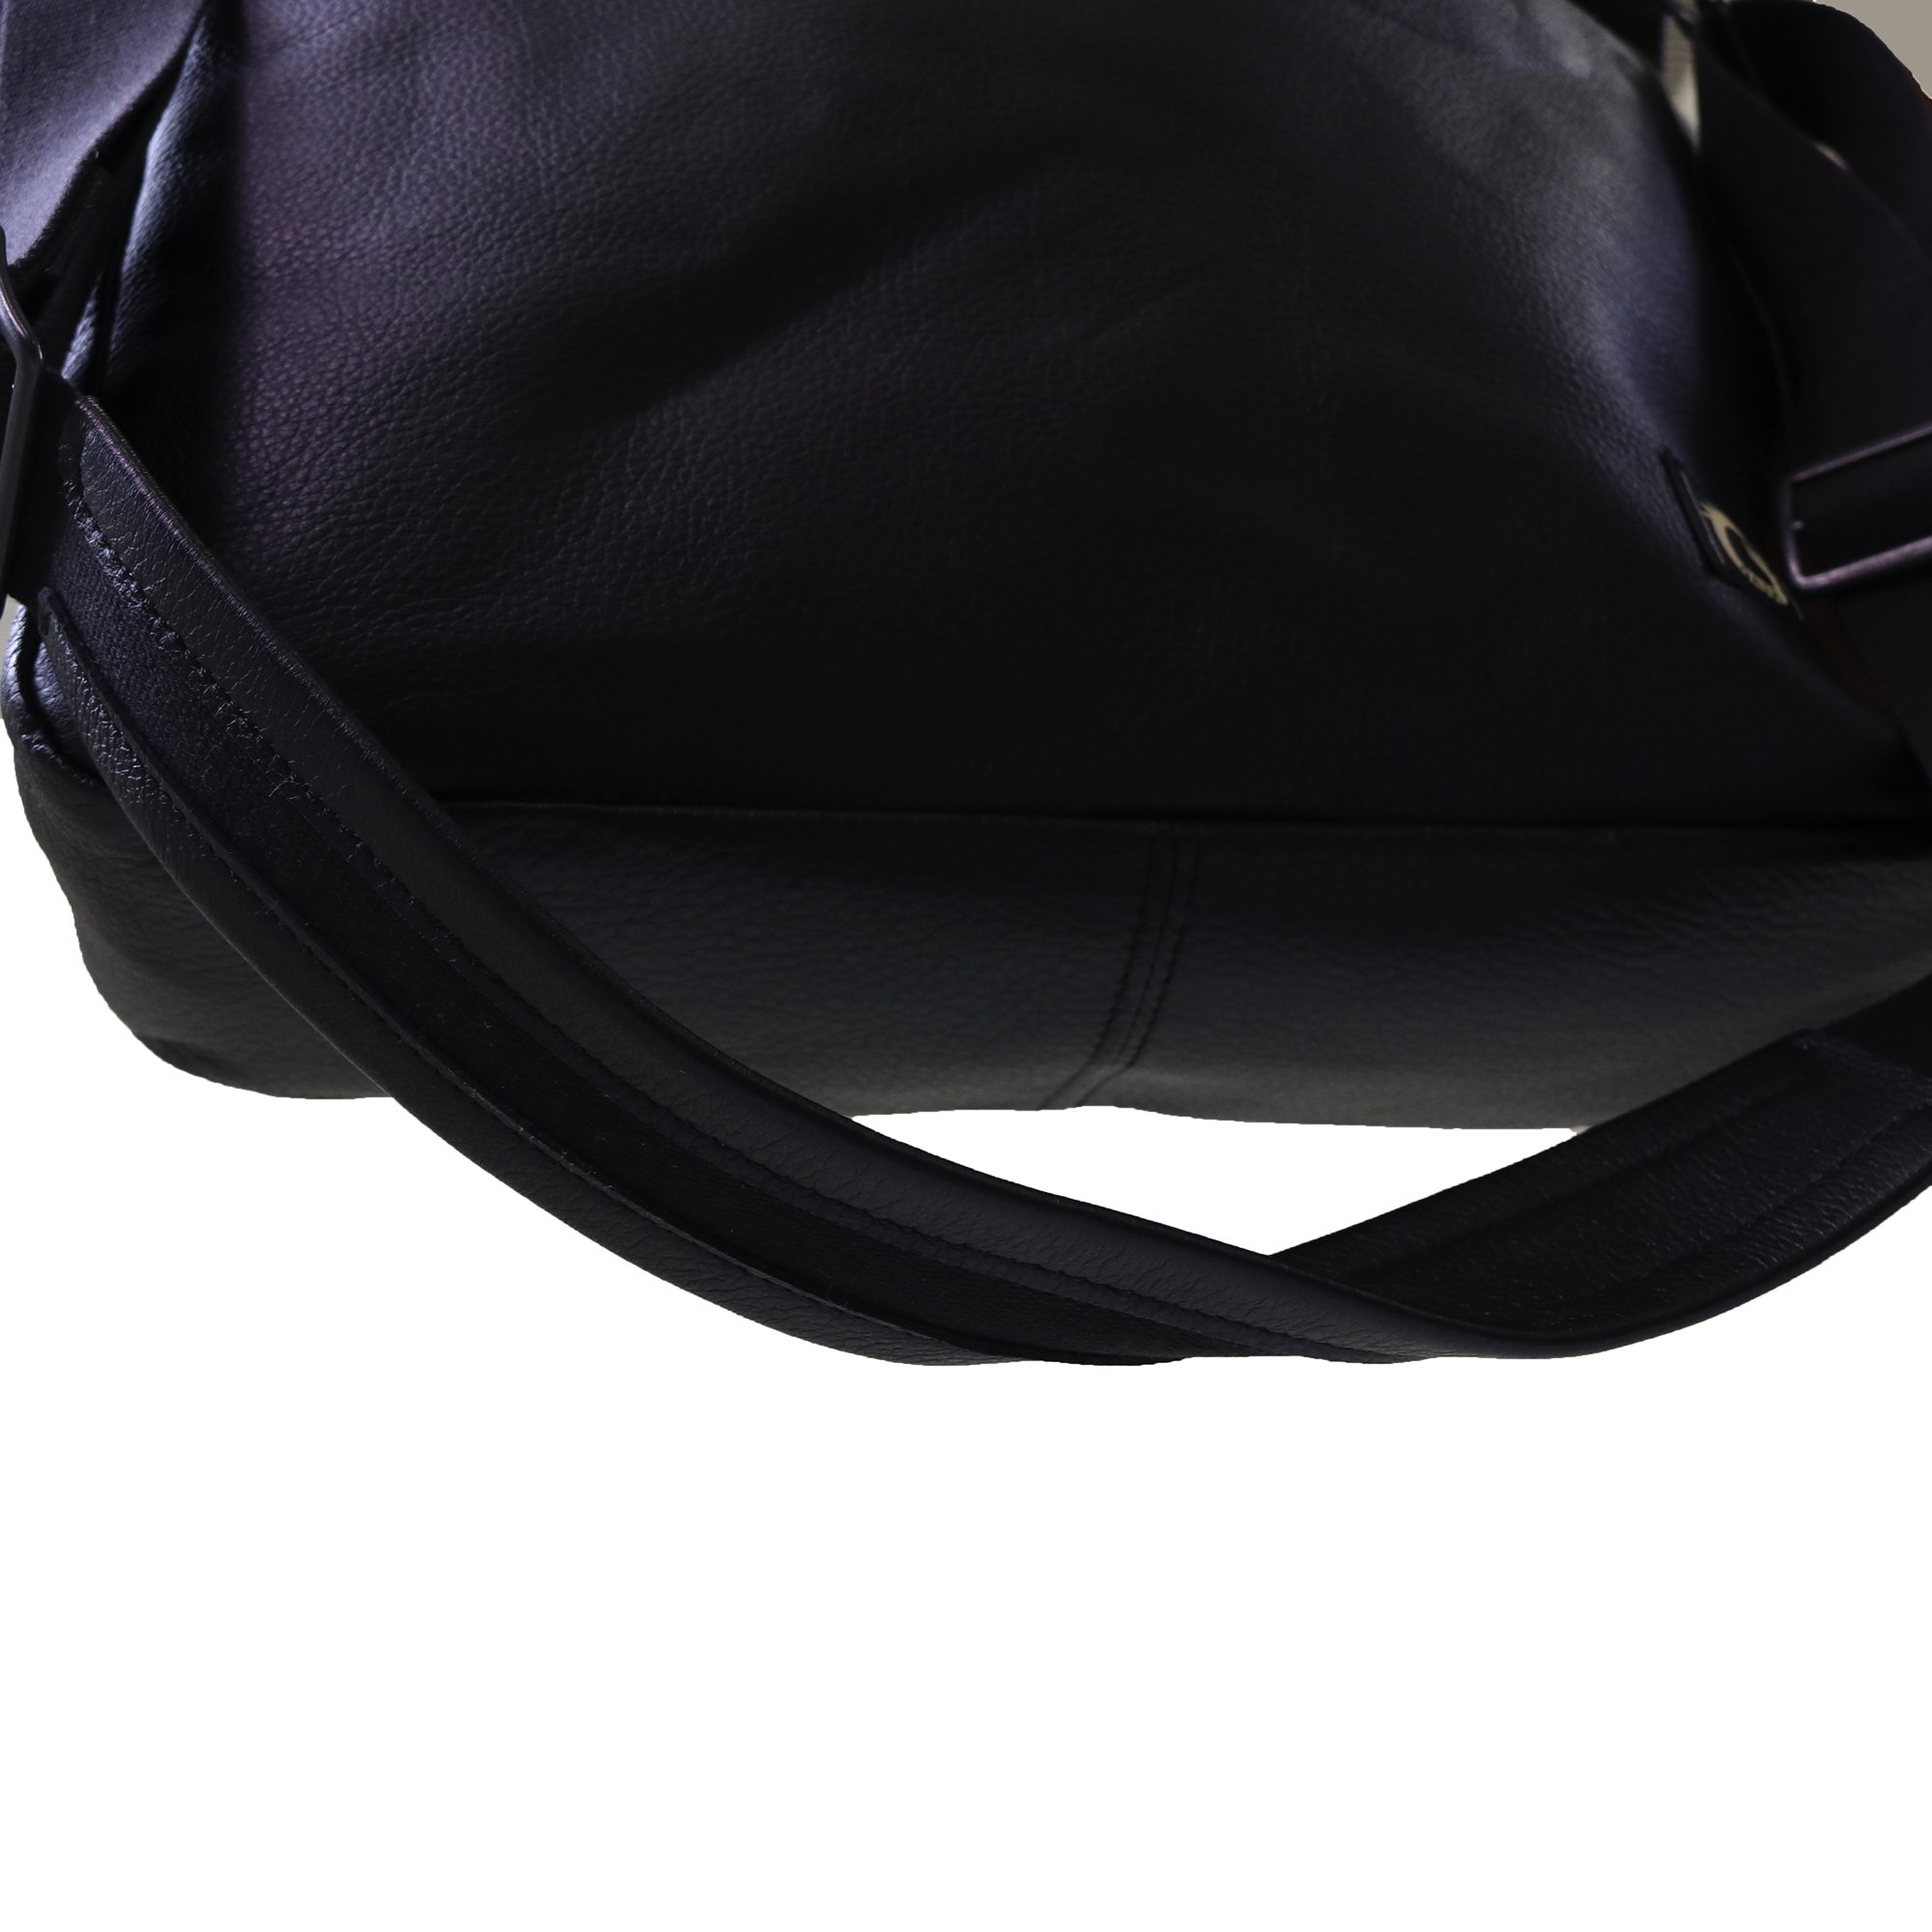 GAVIAL ] レザーショルダーバッグ / leather shoulder bag (black ...